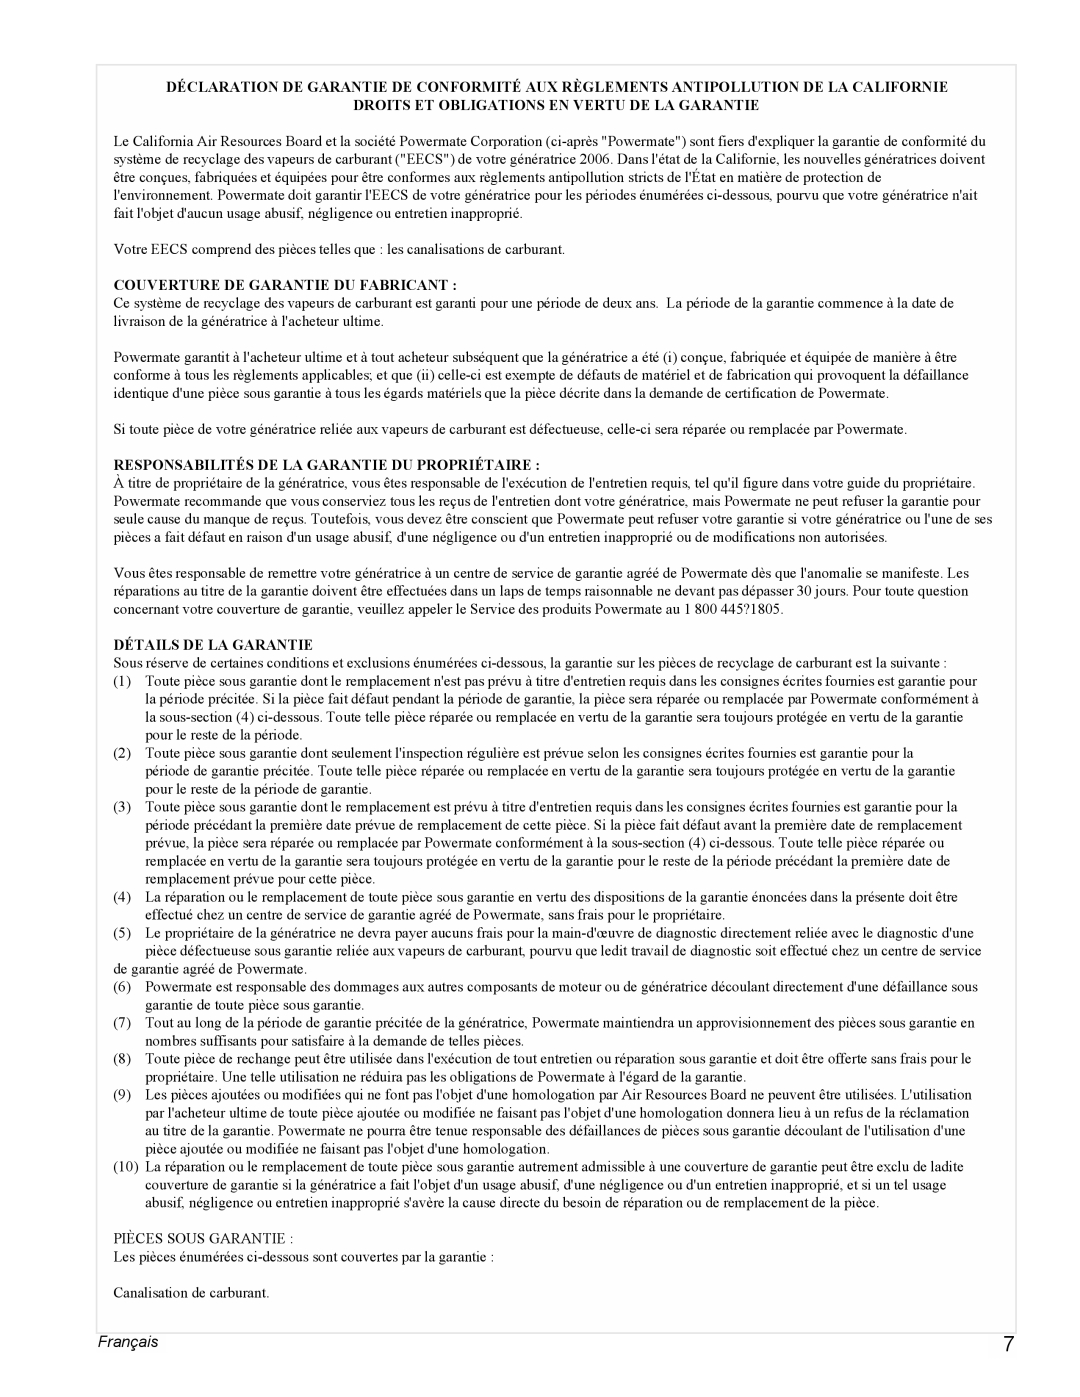 Powermate PMC505622 manual Français, Droits Et Obligations En Vertu De La Garantie, Couverture De Garantie Du Fabricant 